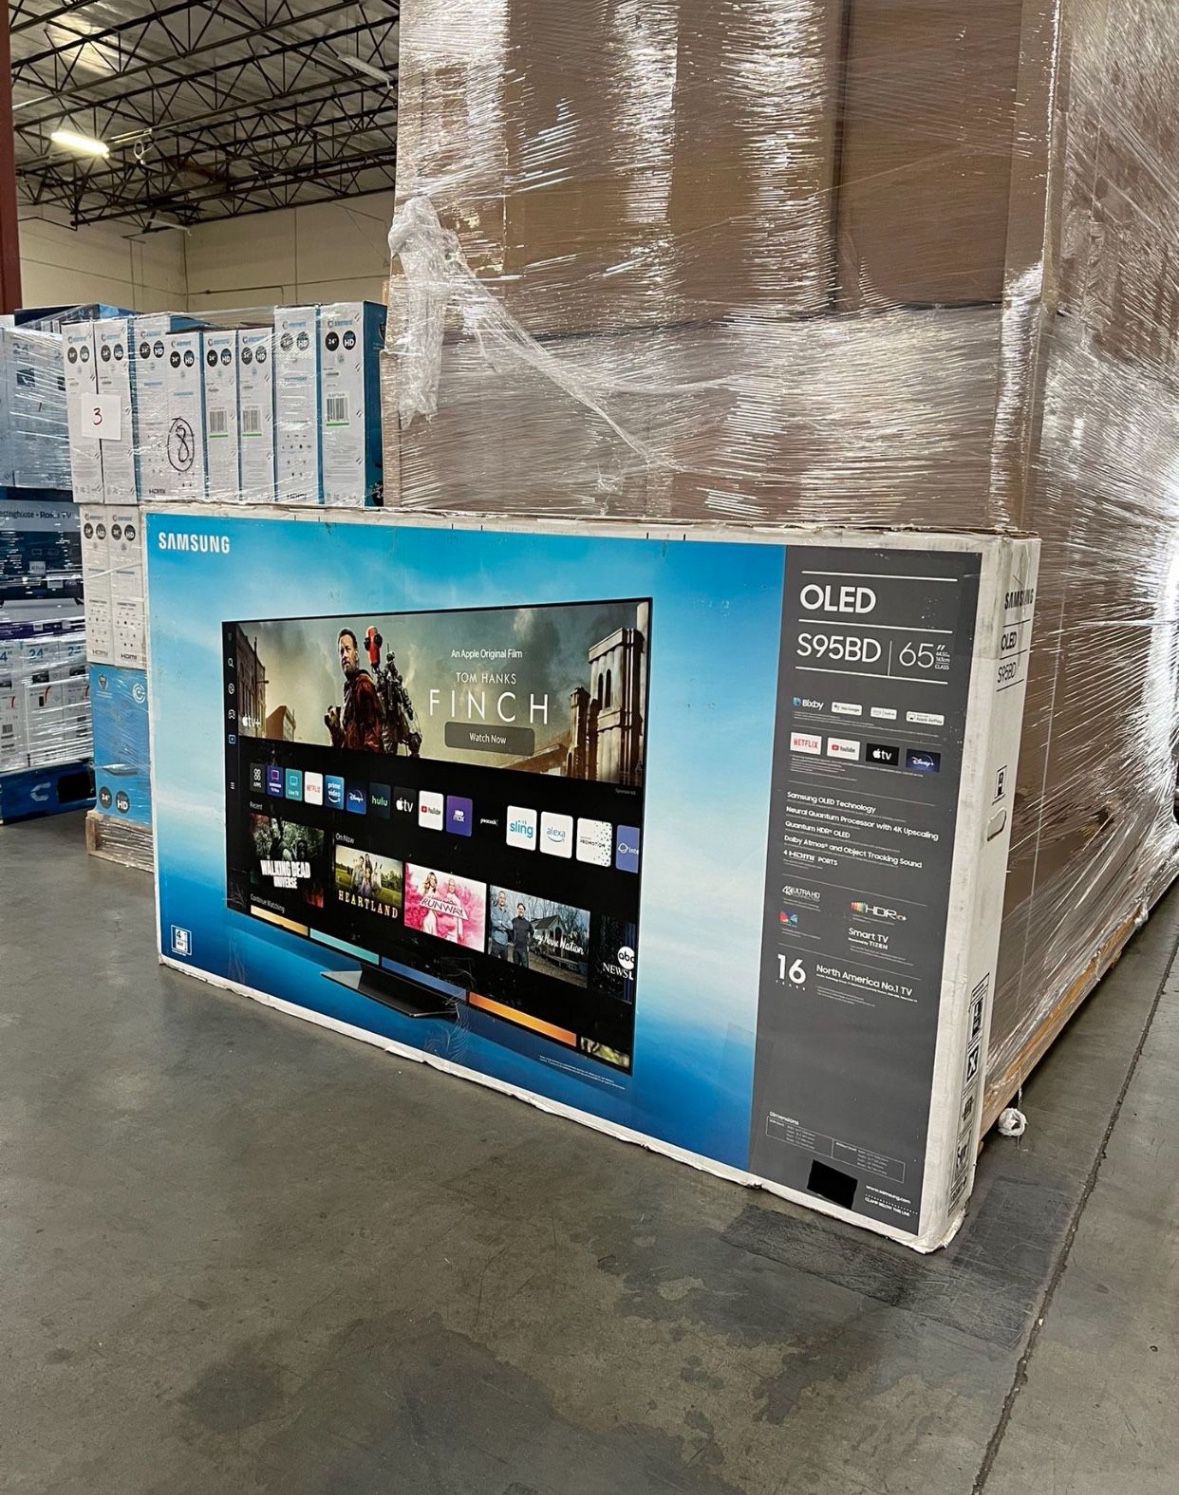 Samsung OLED 65 Inch TV 4K Smart HDR 